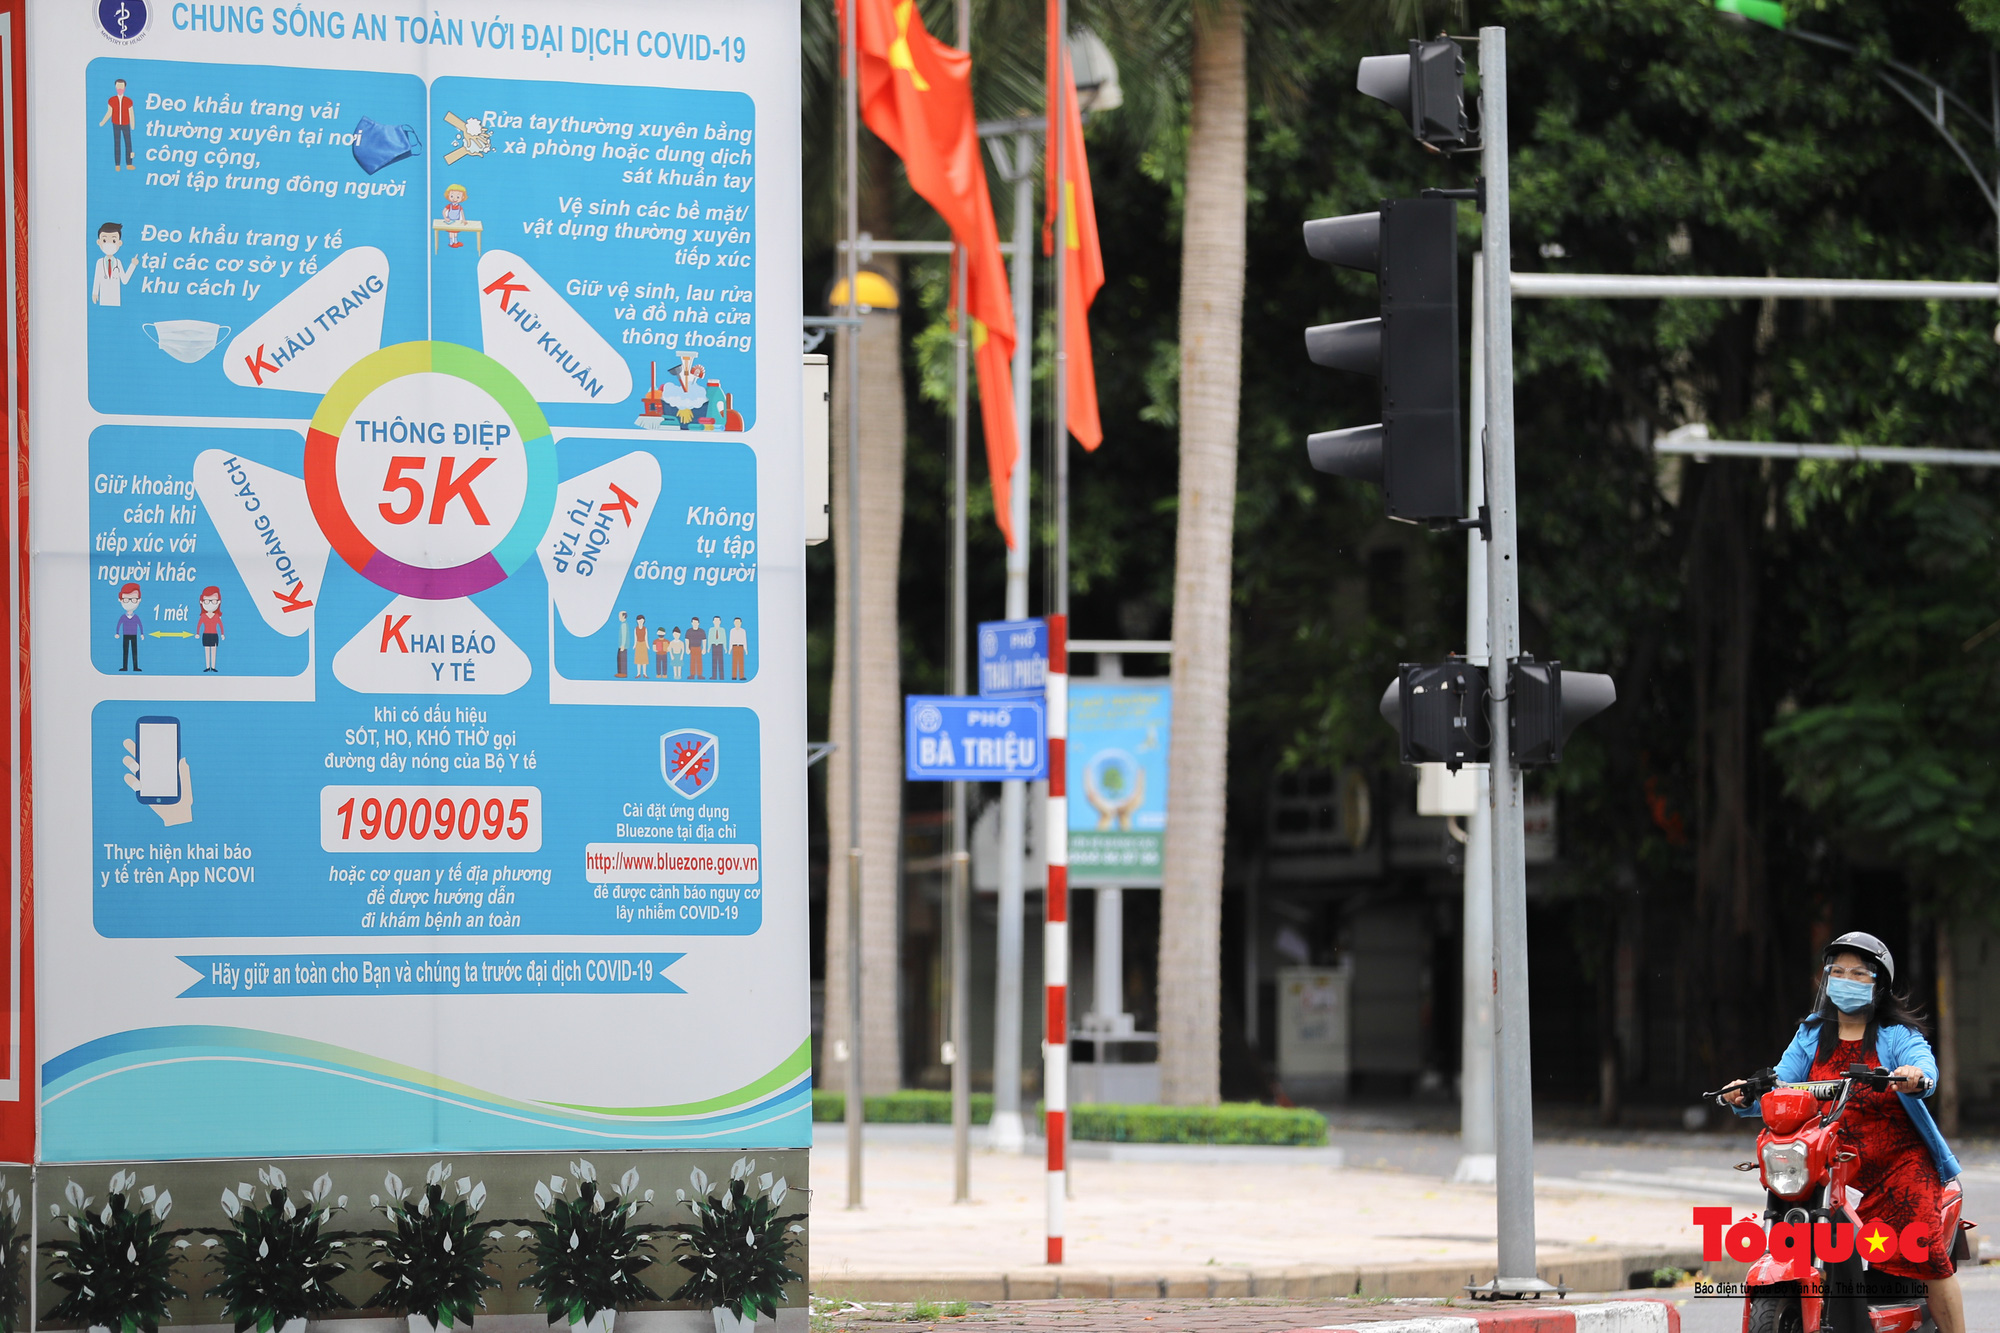 Pano, hình ảnh cổ động phòng chống dịch COVID-19 trên khắp đường phố Hà Nội - Ảnh 2.